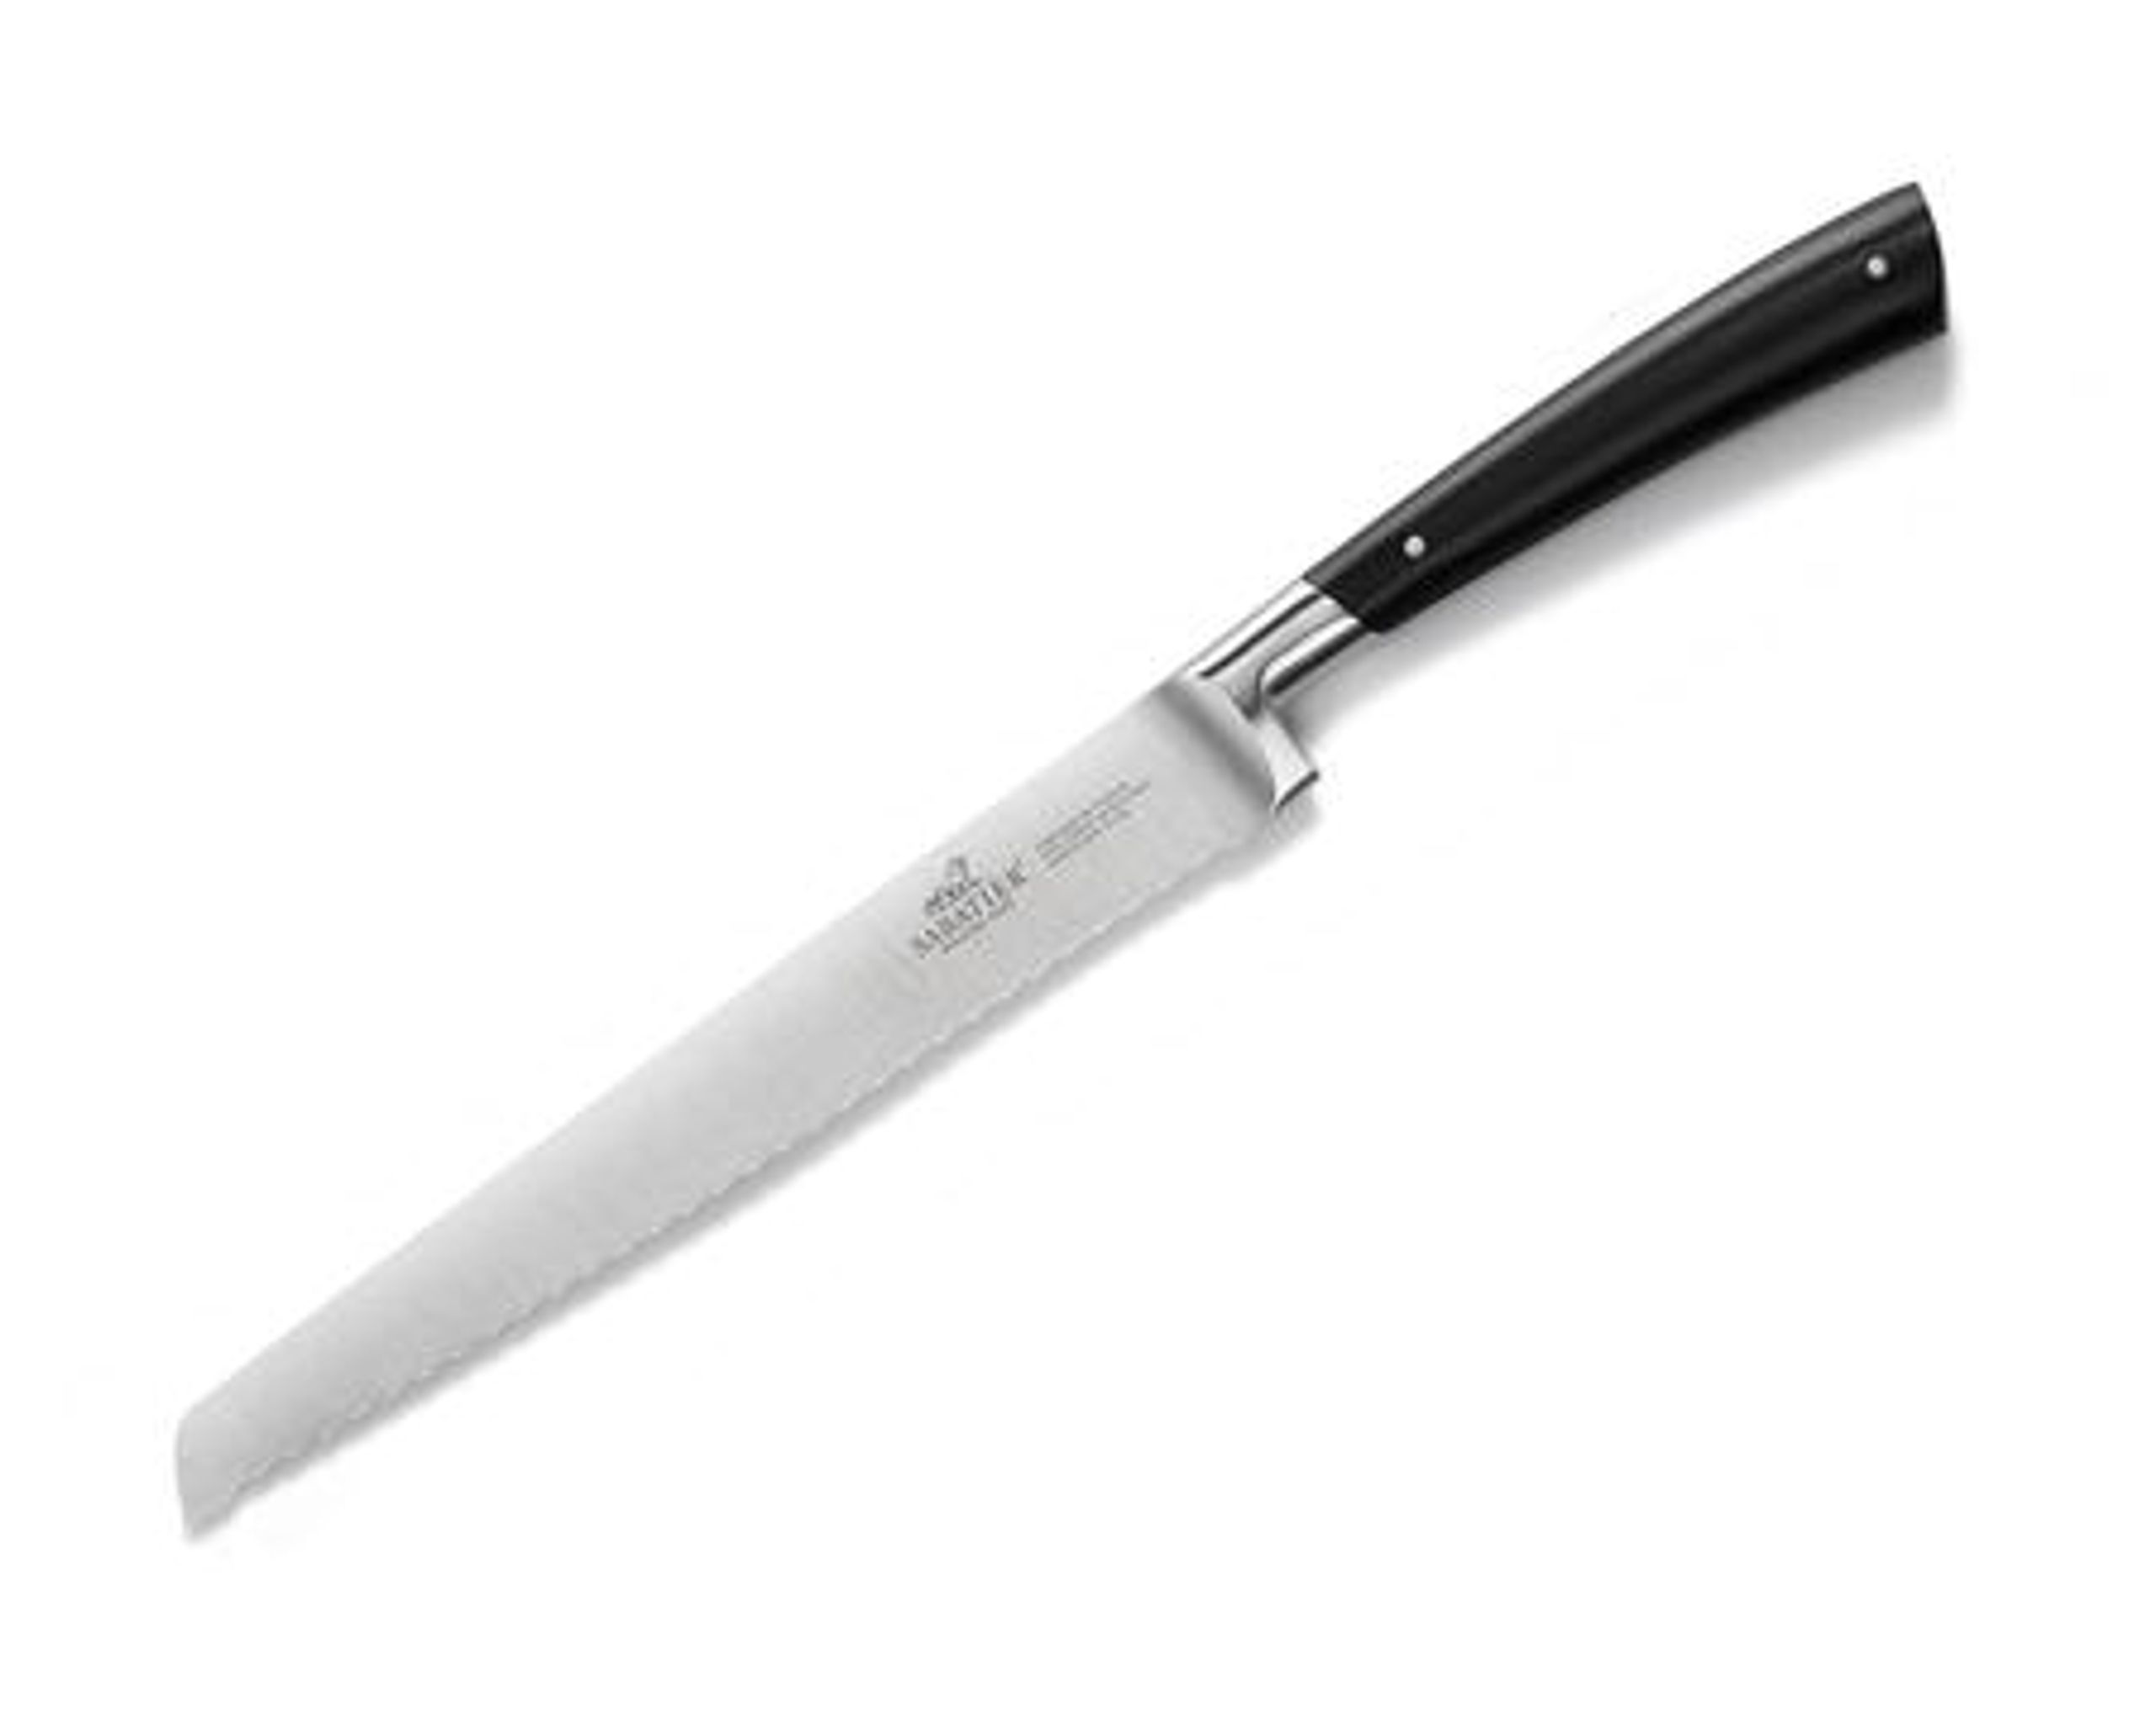 Lion Sabatier Edonist Knife Series - Couteau - Lion Sabatier